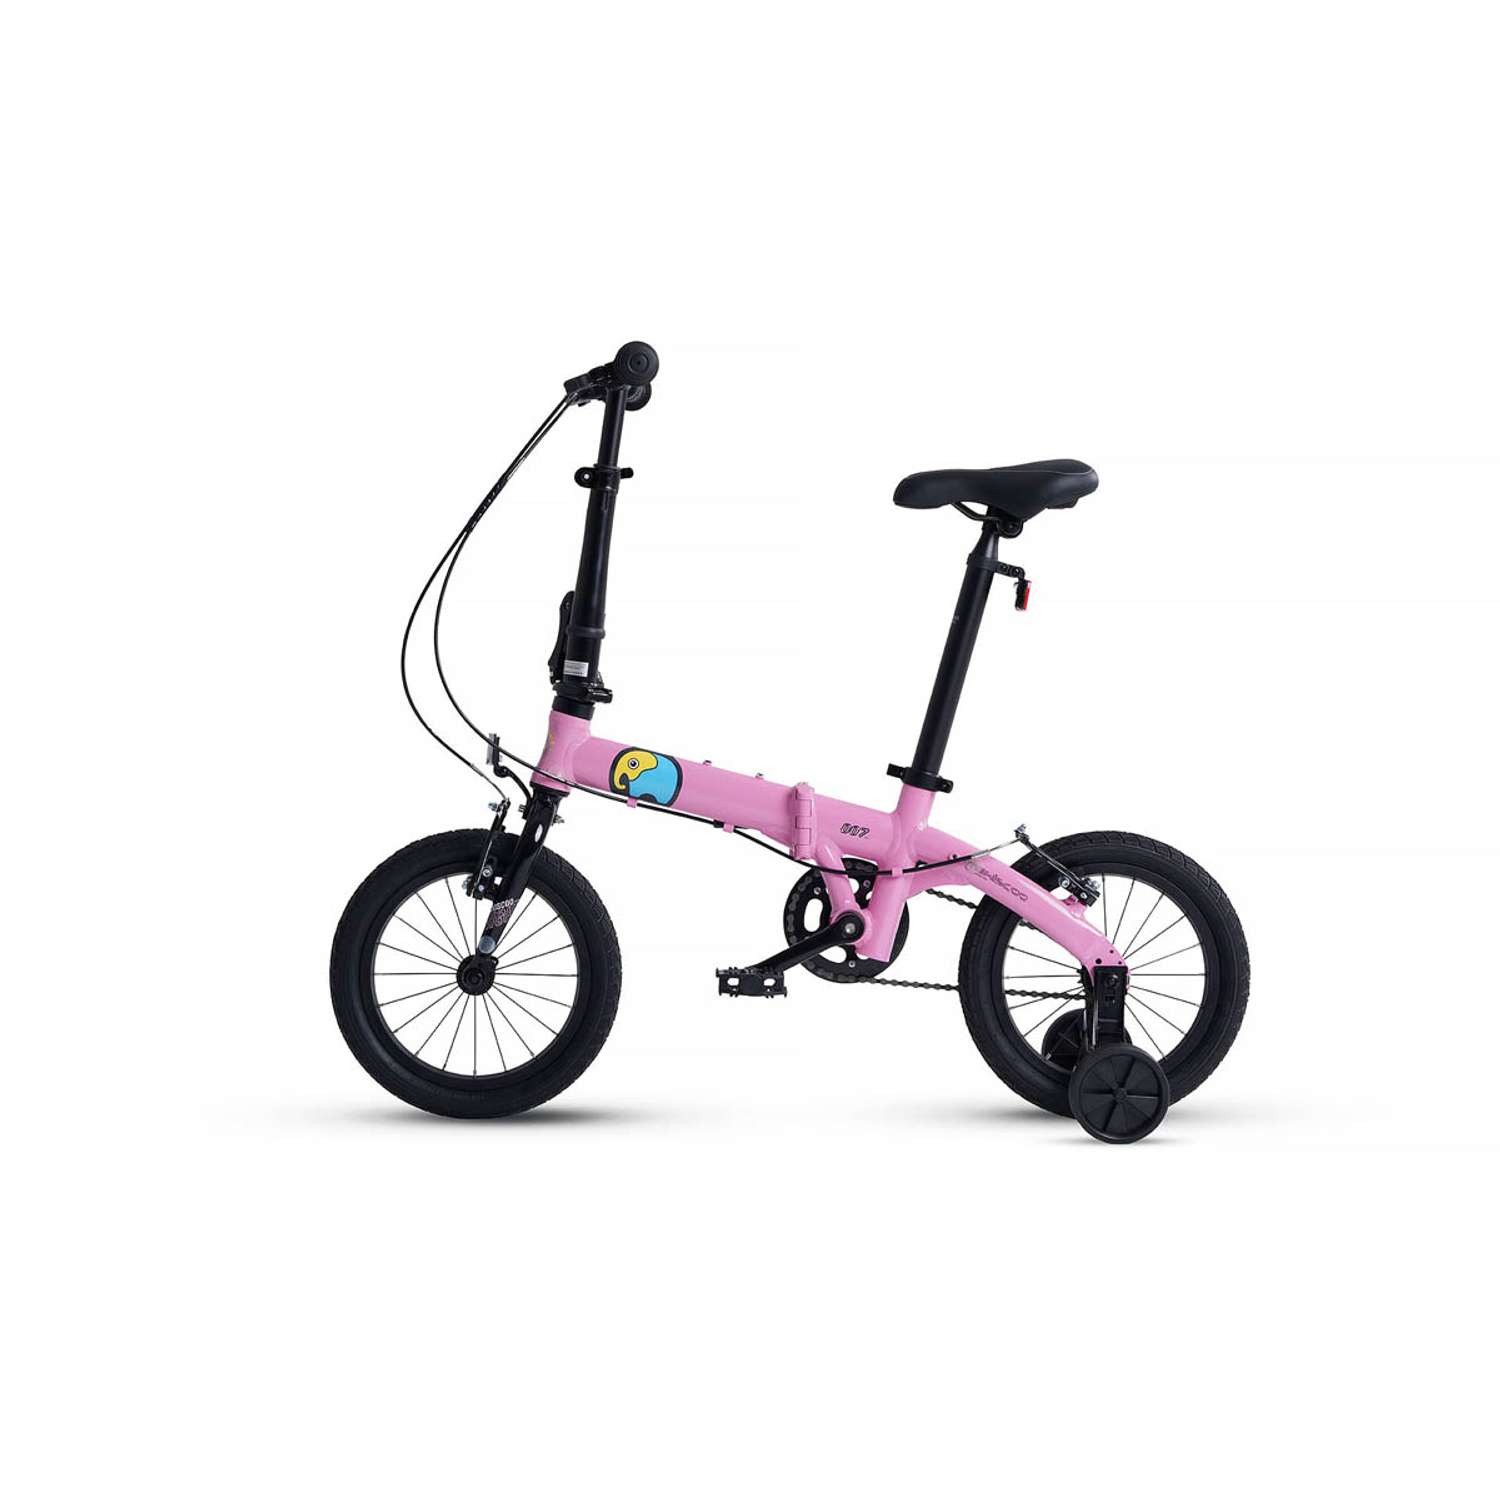 Велосипед Детский Складной Maxiscoo S007 стандарт 14 розовый - фото 3